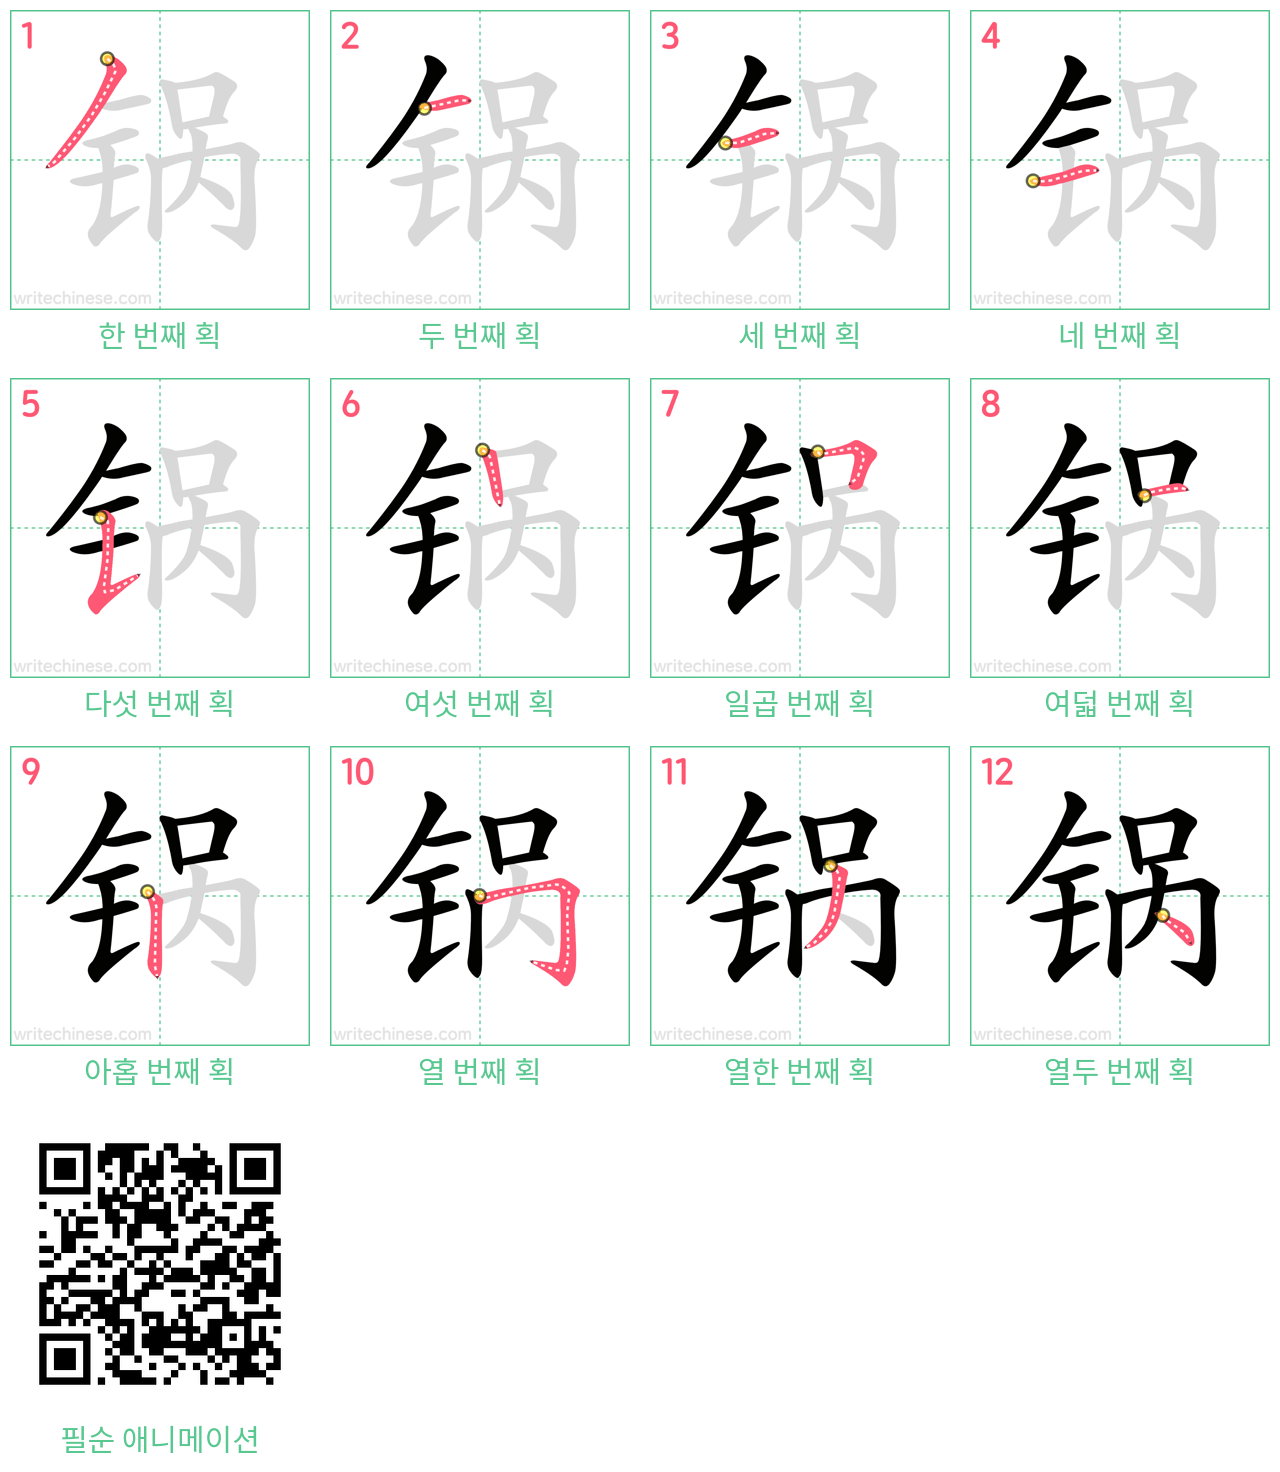 锅 step-by-step stroke order diagrams